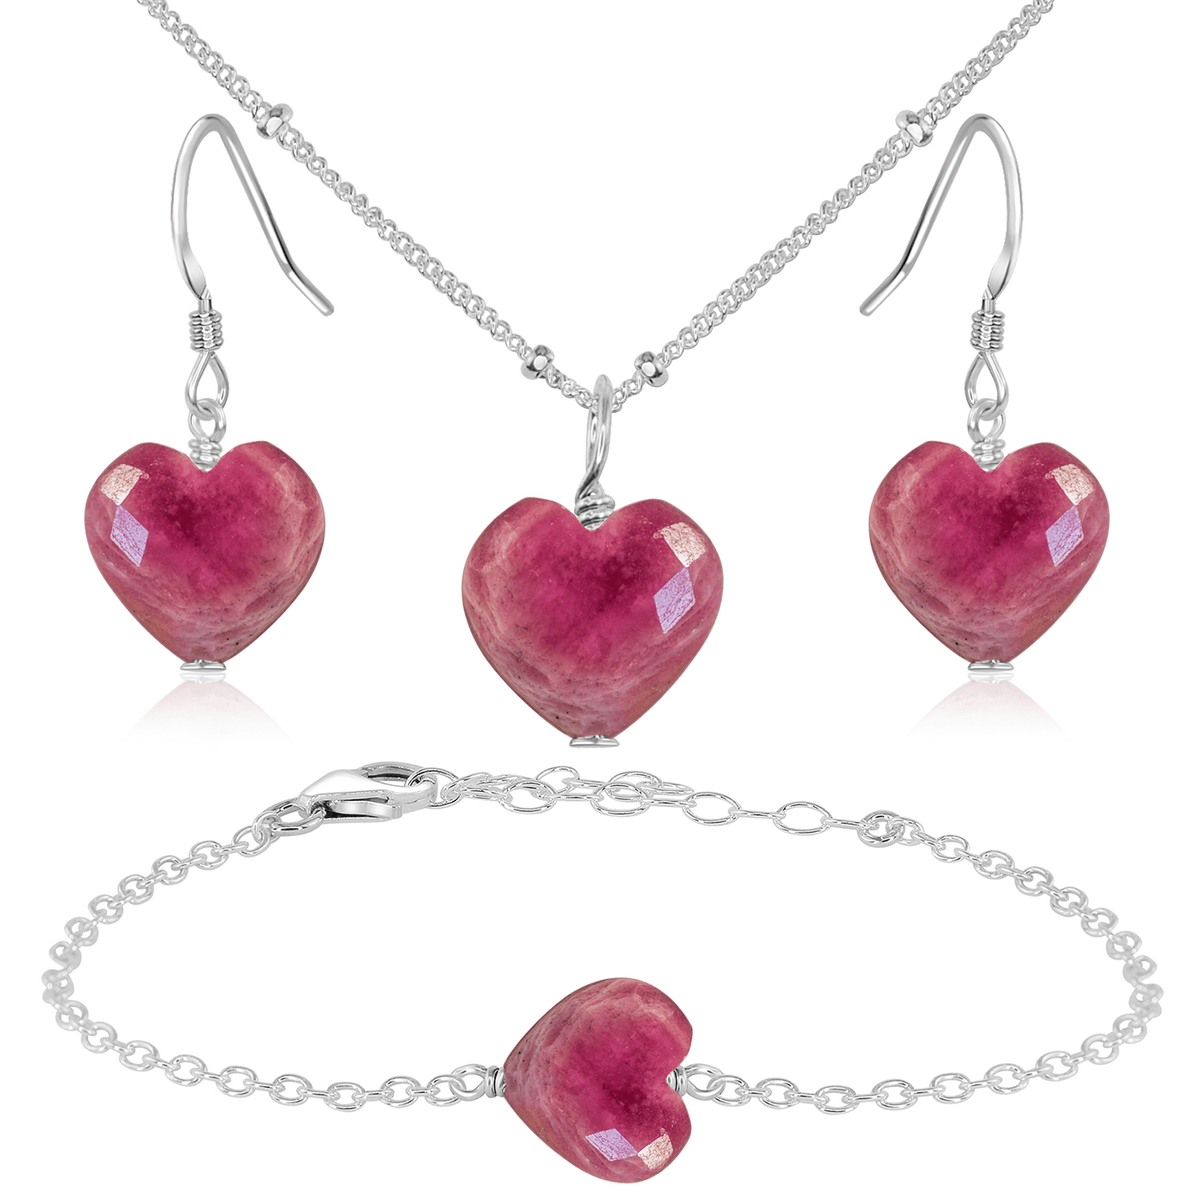 Ruby Crystal Heart Jewellery Set - Ruby Crystal Heart Jewellery Set - Sterling Silver / Satellite / Necklace & Earrings & Bracelet - Luna Tide Handmade Crystal Jewellery